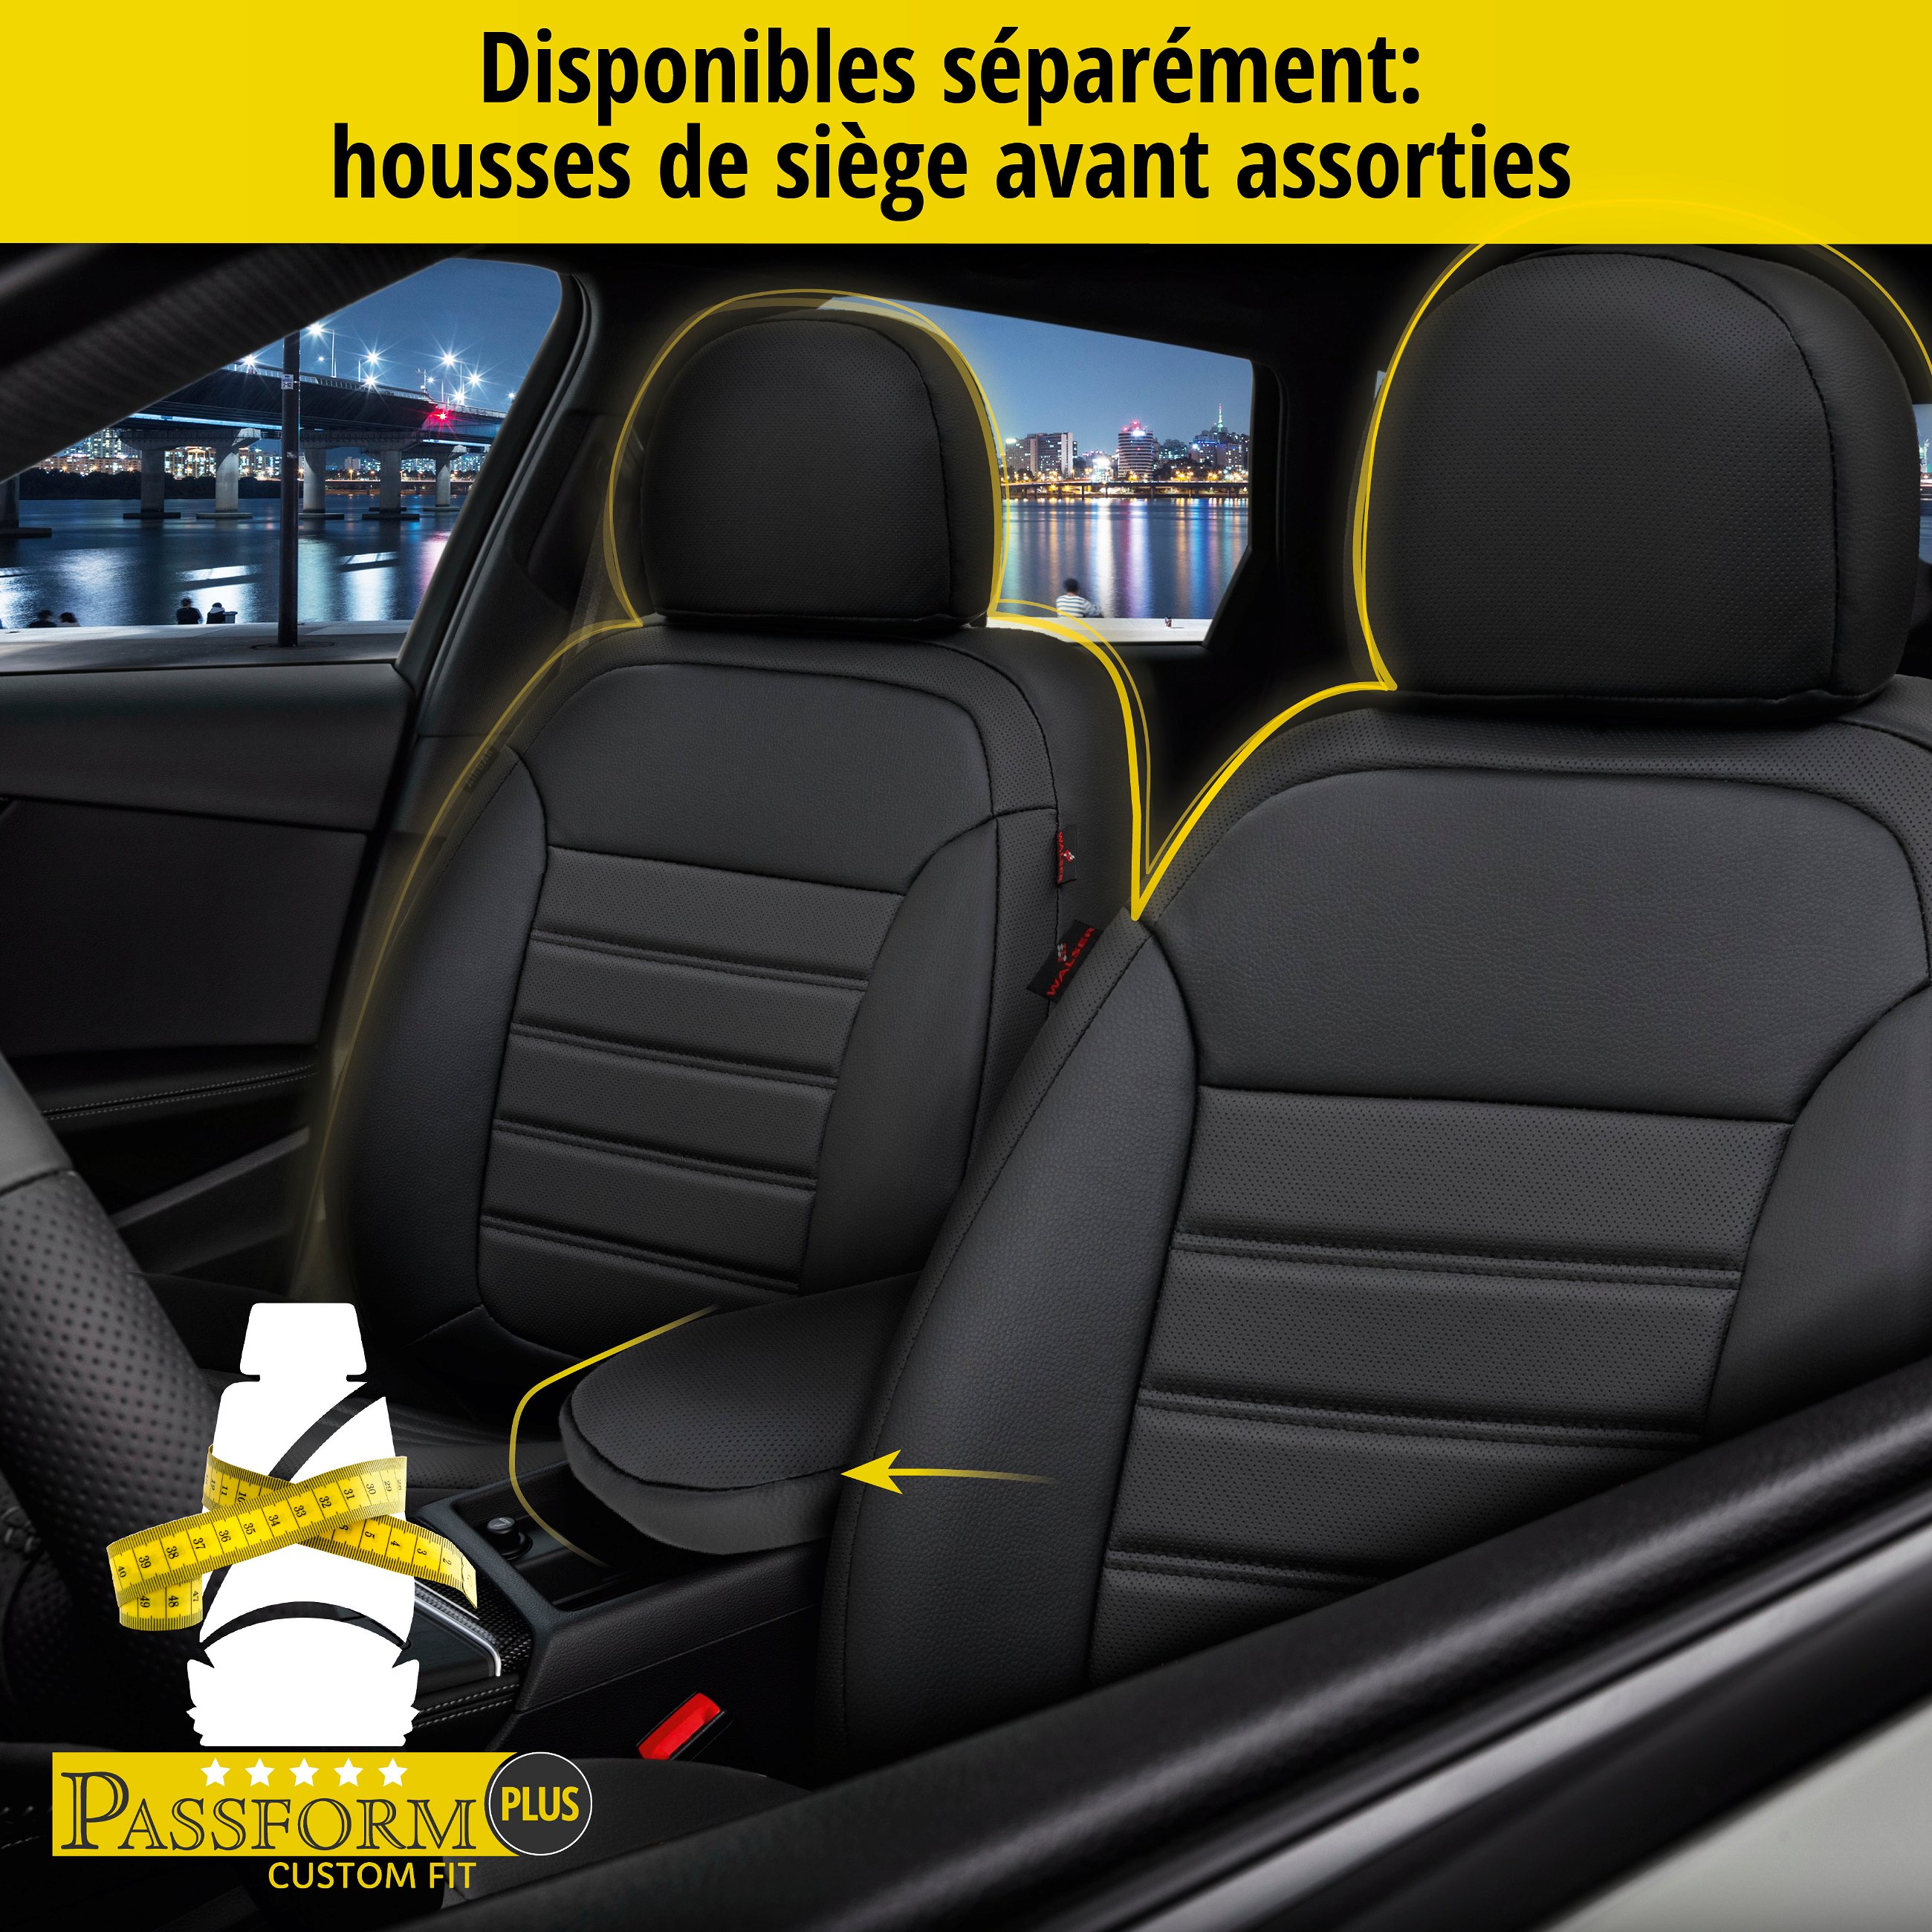 Housse de siège Robusto pour VW Passat Variant (3G5, CB5) 08/2014-auj., 1 housse de siège arrière pour les sièges normaux